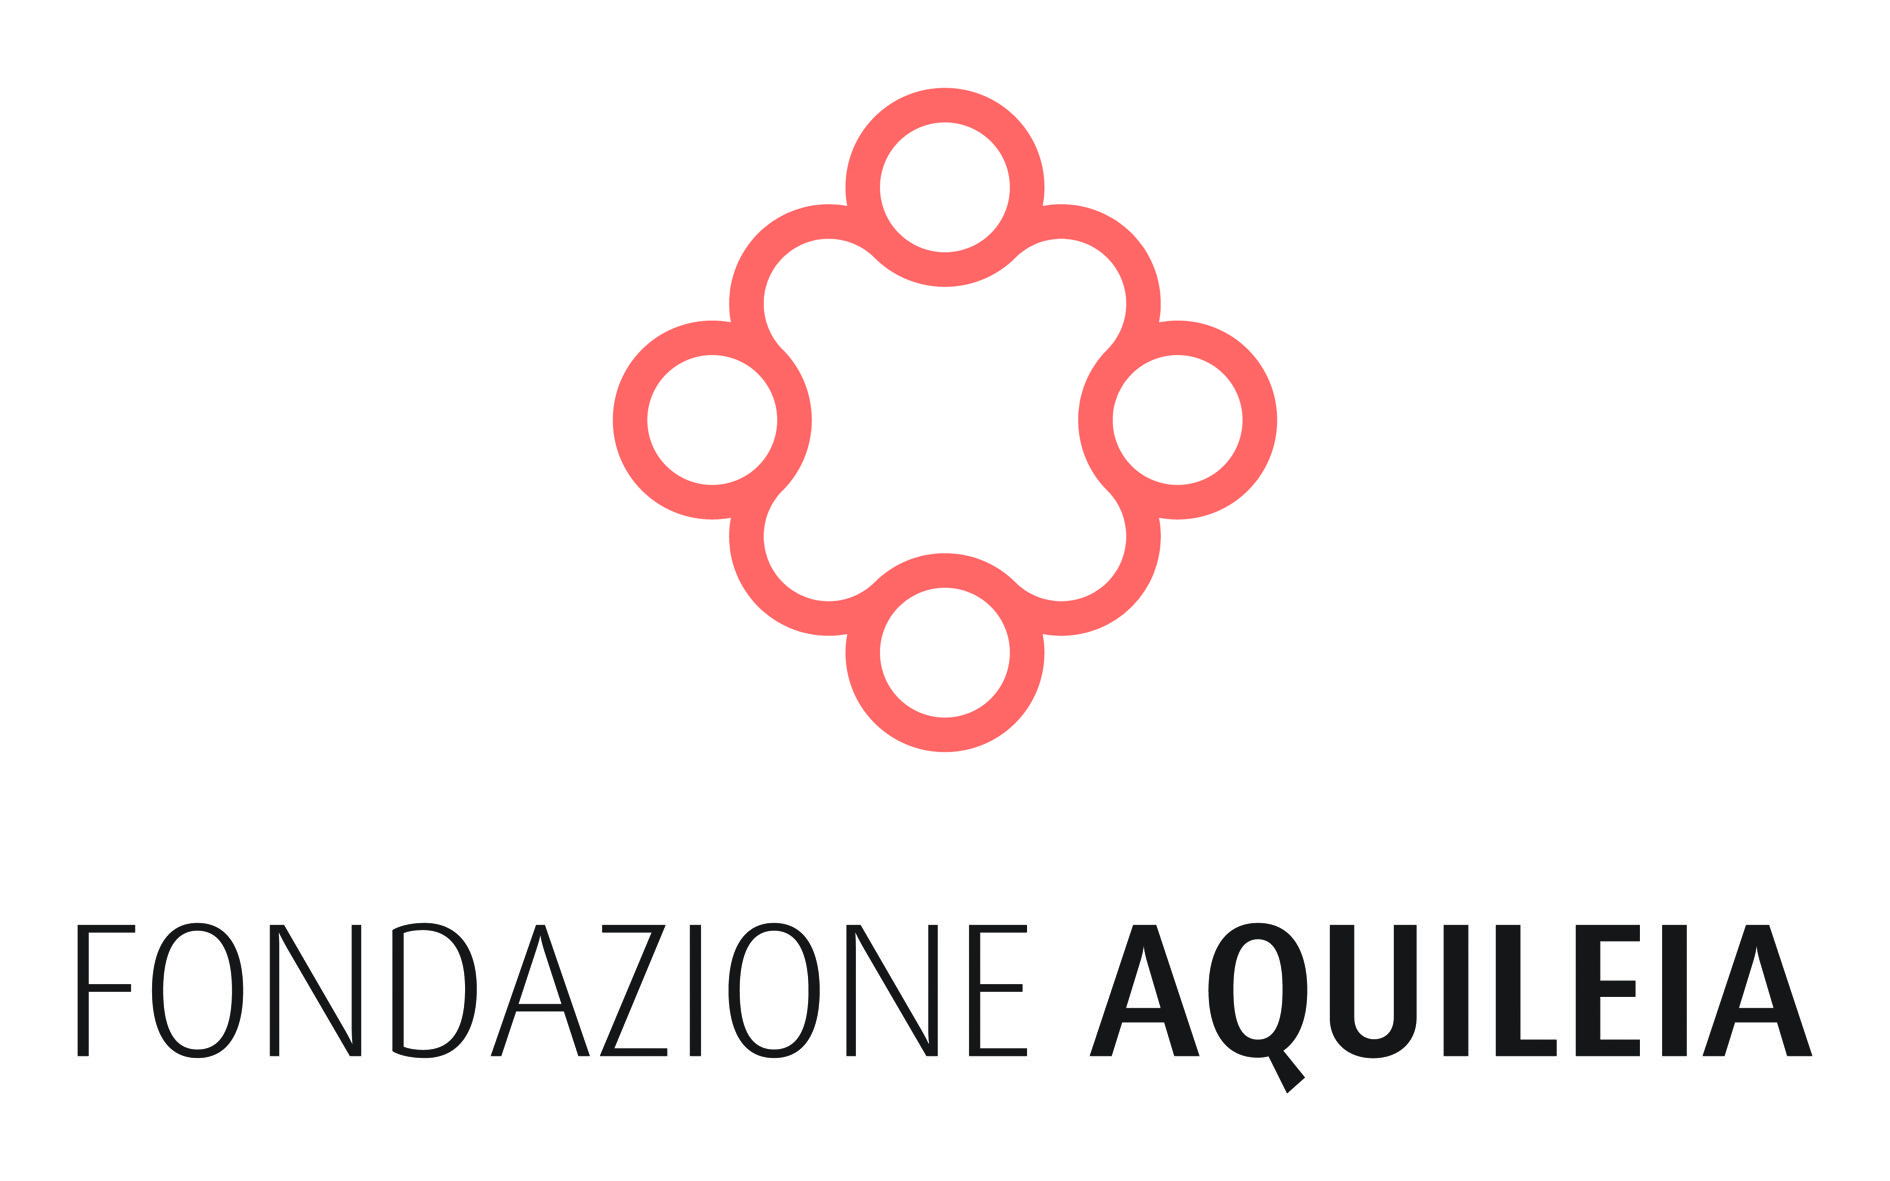 Foundation Aquileia